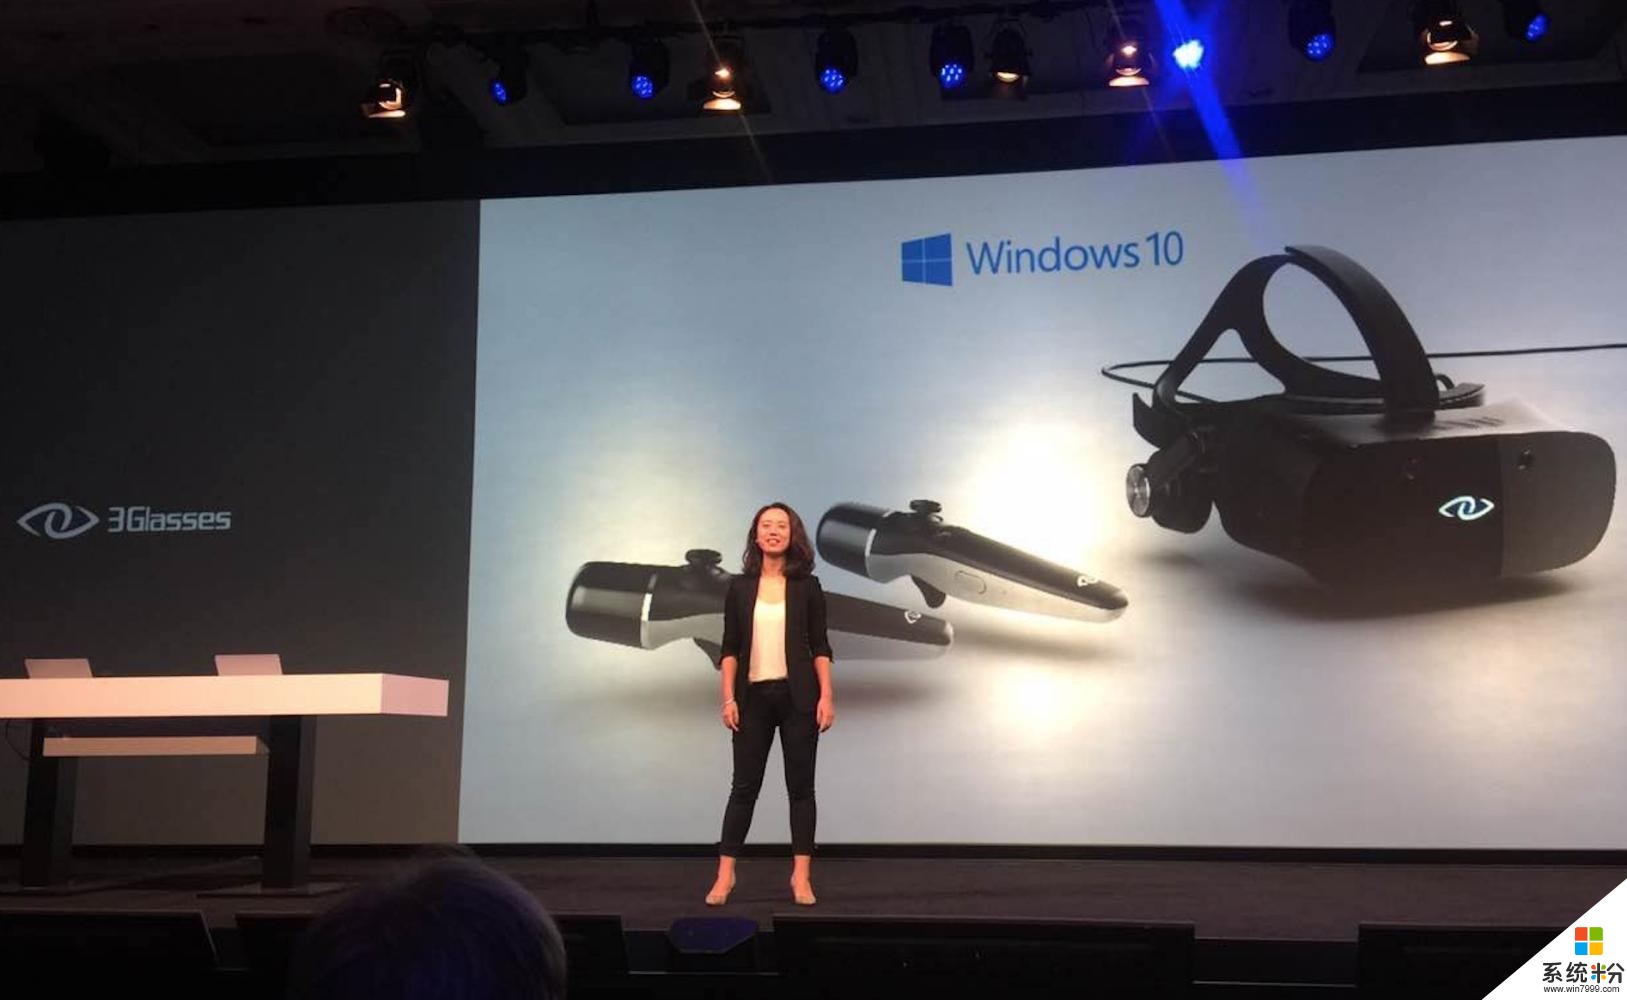 微软创意者411发布 3Glasses将迎来内容布局丰收(1)